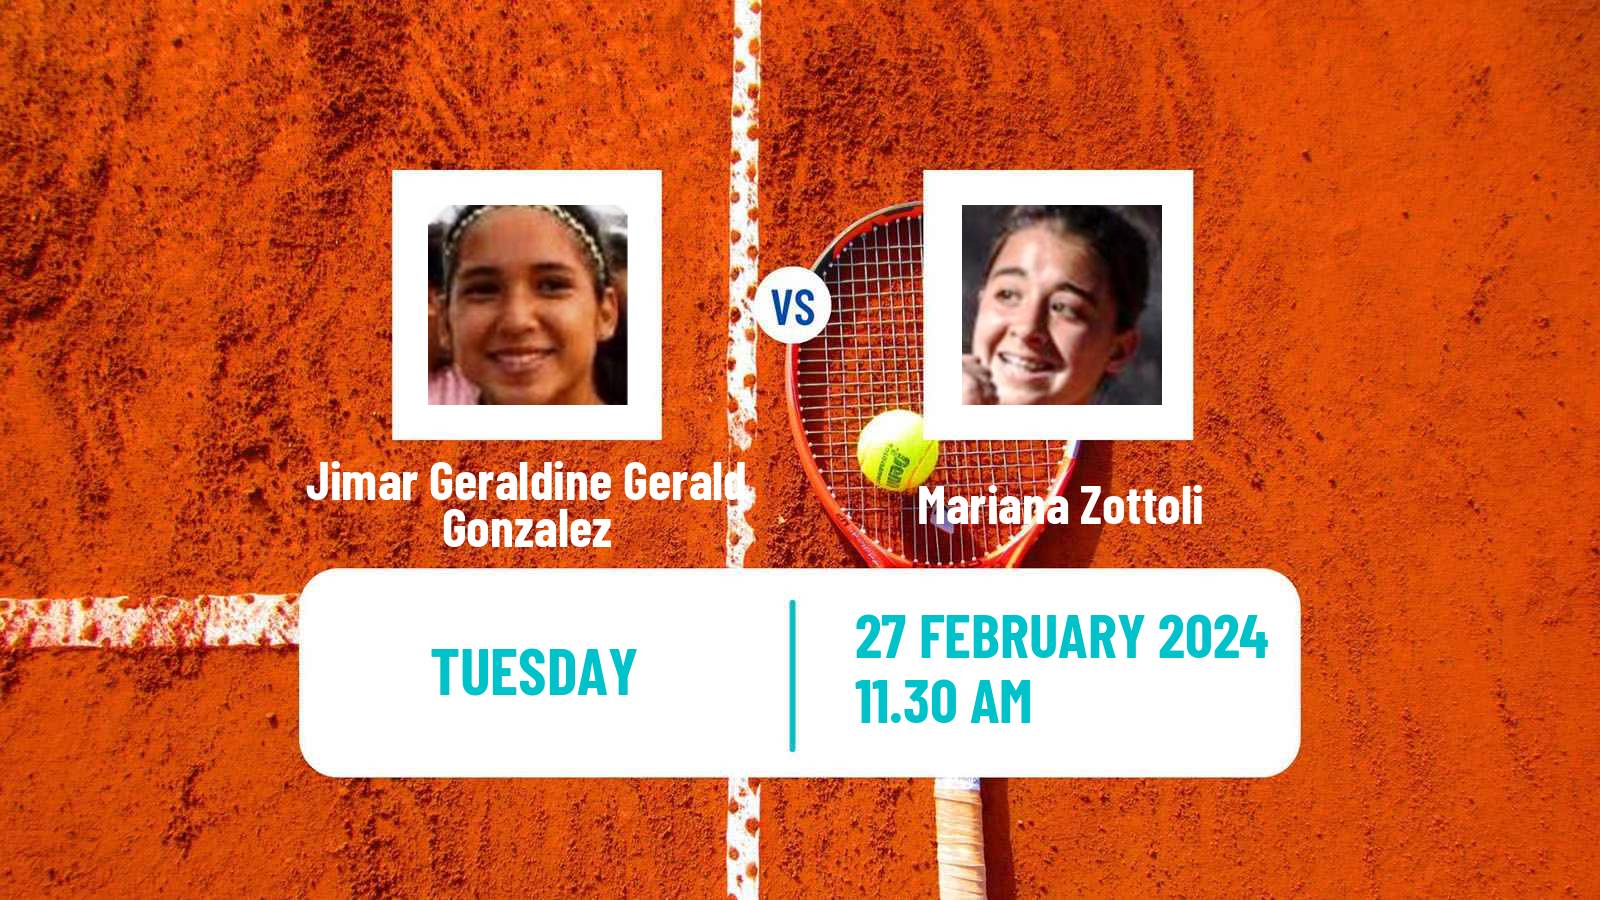 Tennis ITF W15 Tucuman Women Jimar Geraldine Gerald Gonzalez - Mariana Zottoli